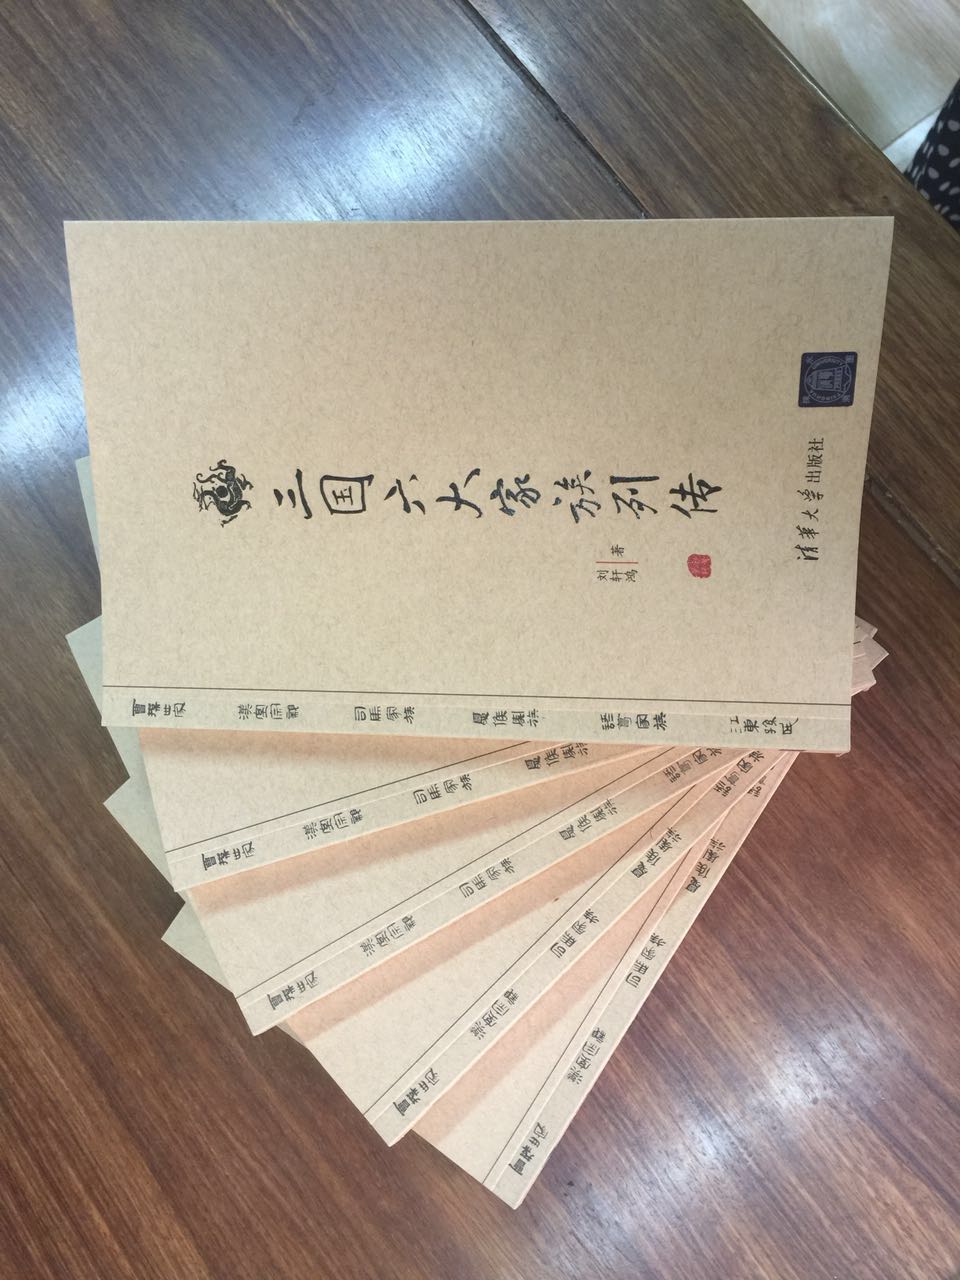 大家好，我是这本书的作者，如果您想和我讨论这本书可以加我的微信：liuxuanhong0218感谢您的支持啦。